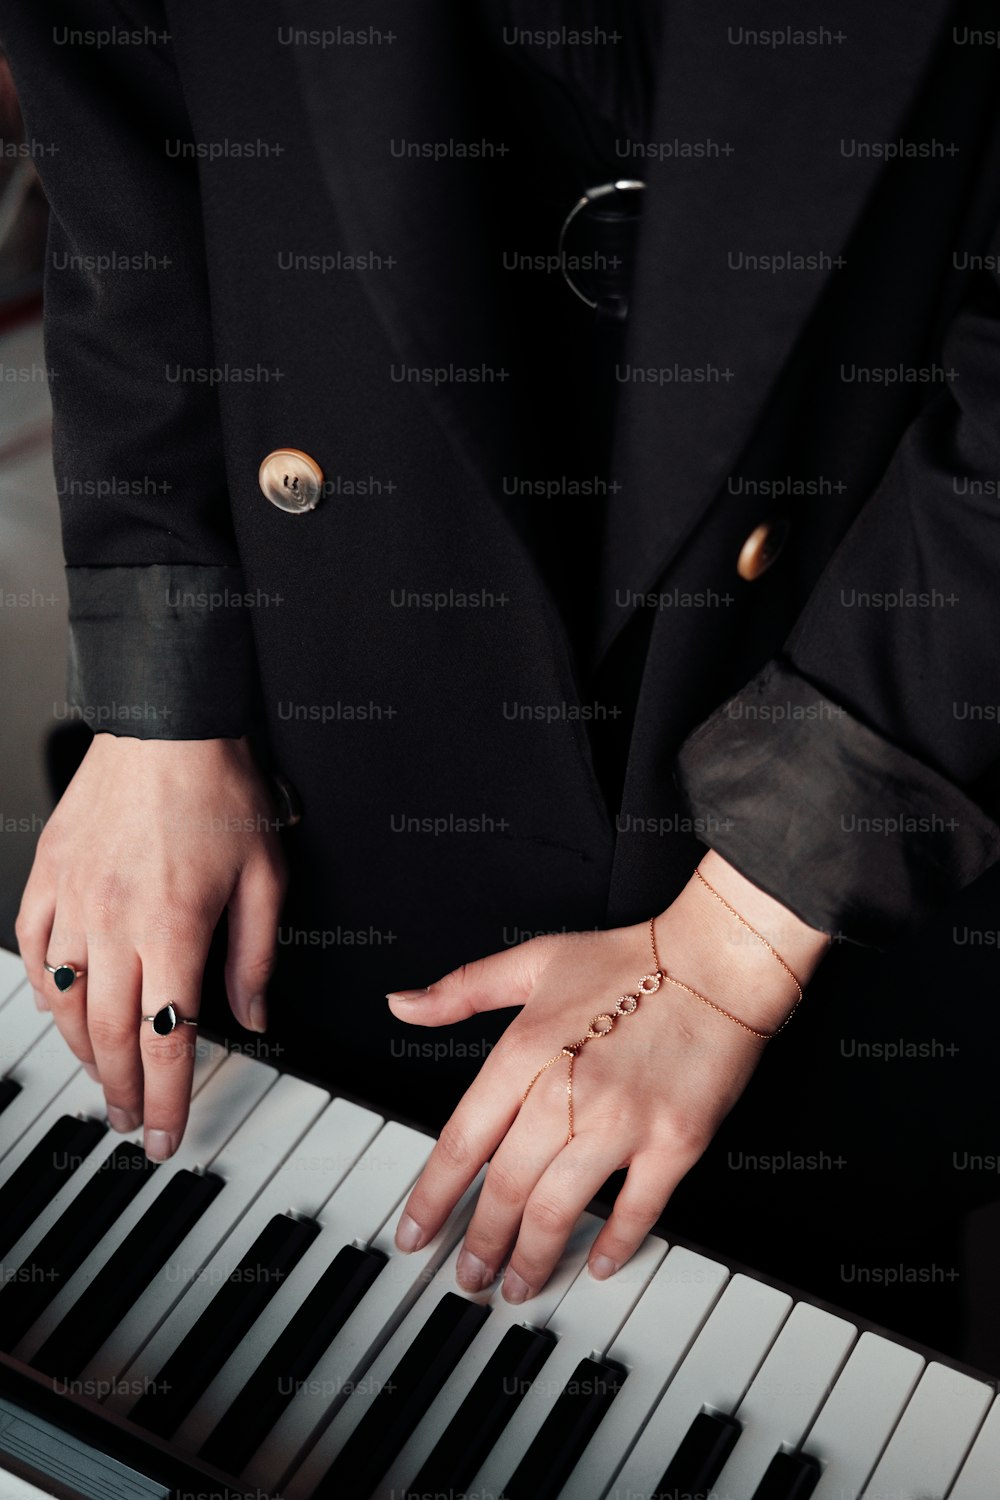 黒いスーツを着た人がピアノを弾いている